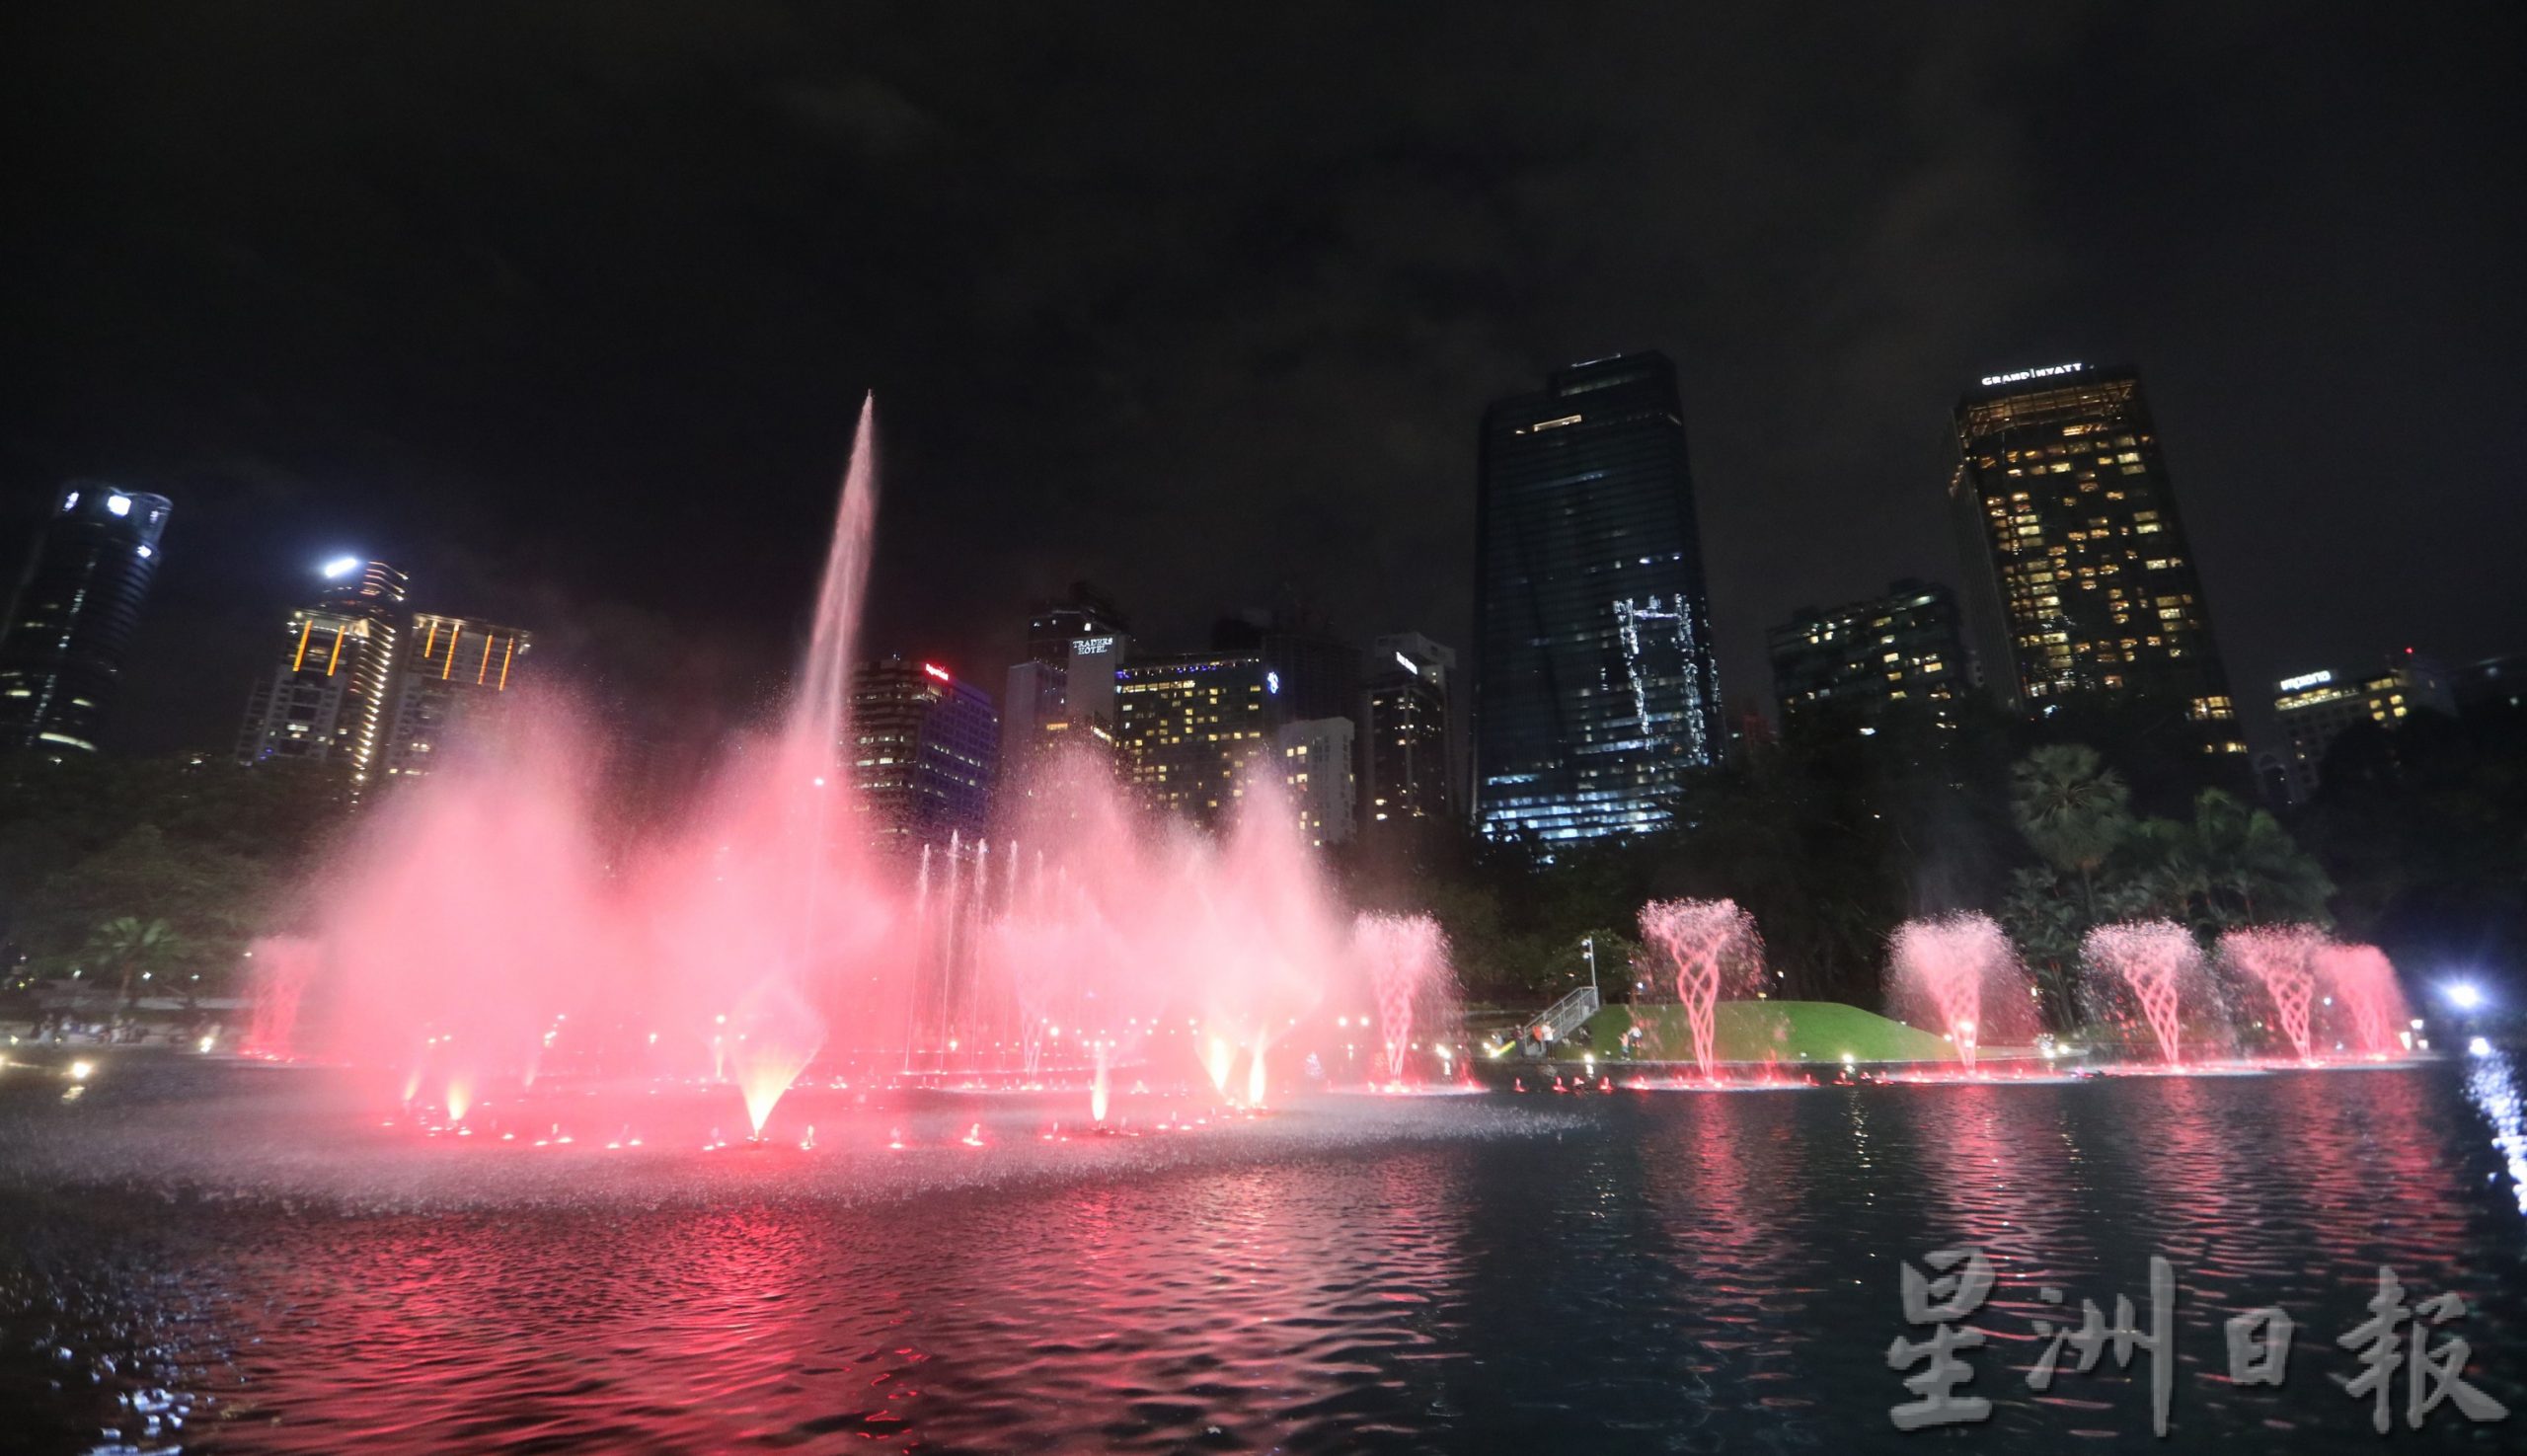 大都会/封底画页/吉隆坡音乐喷泉